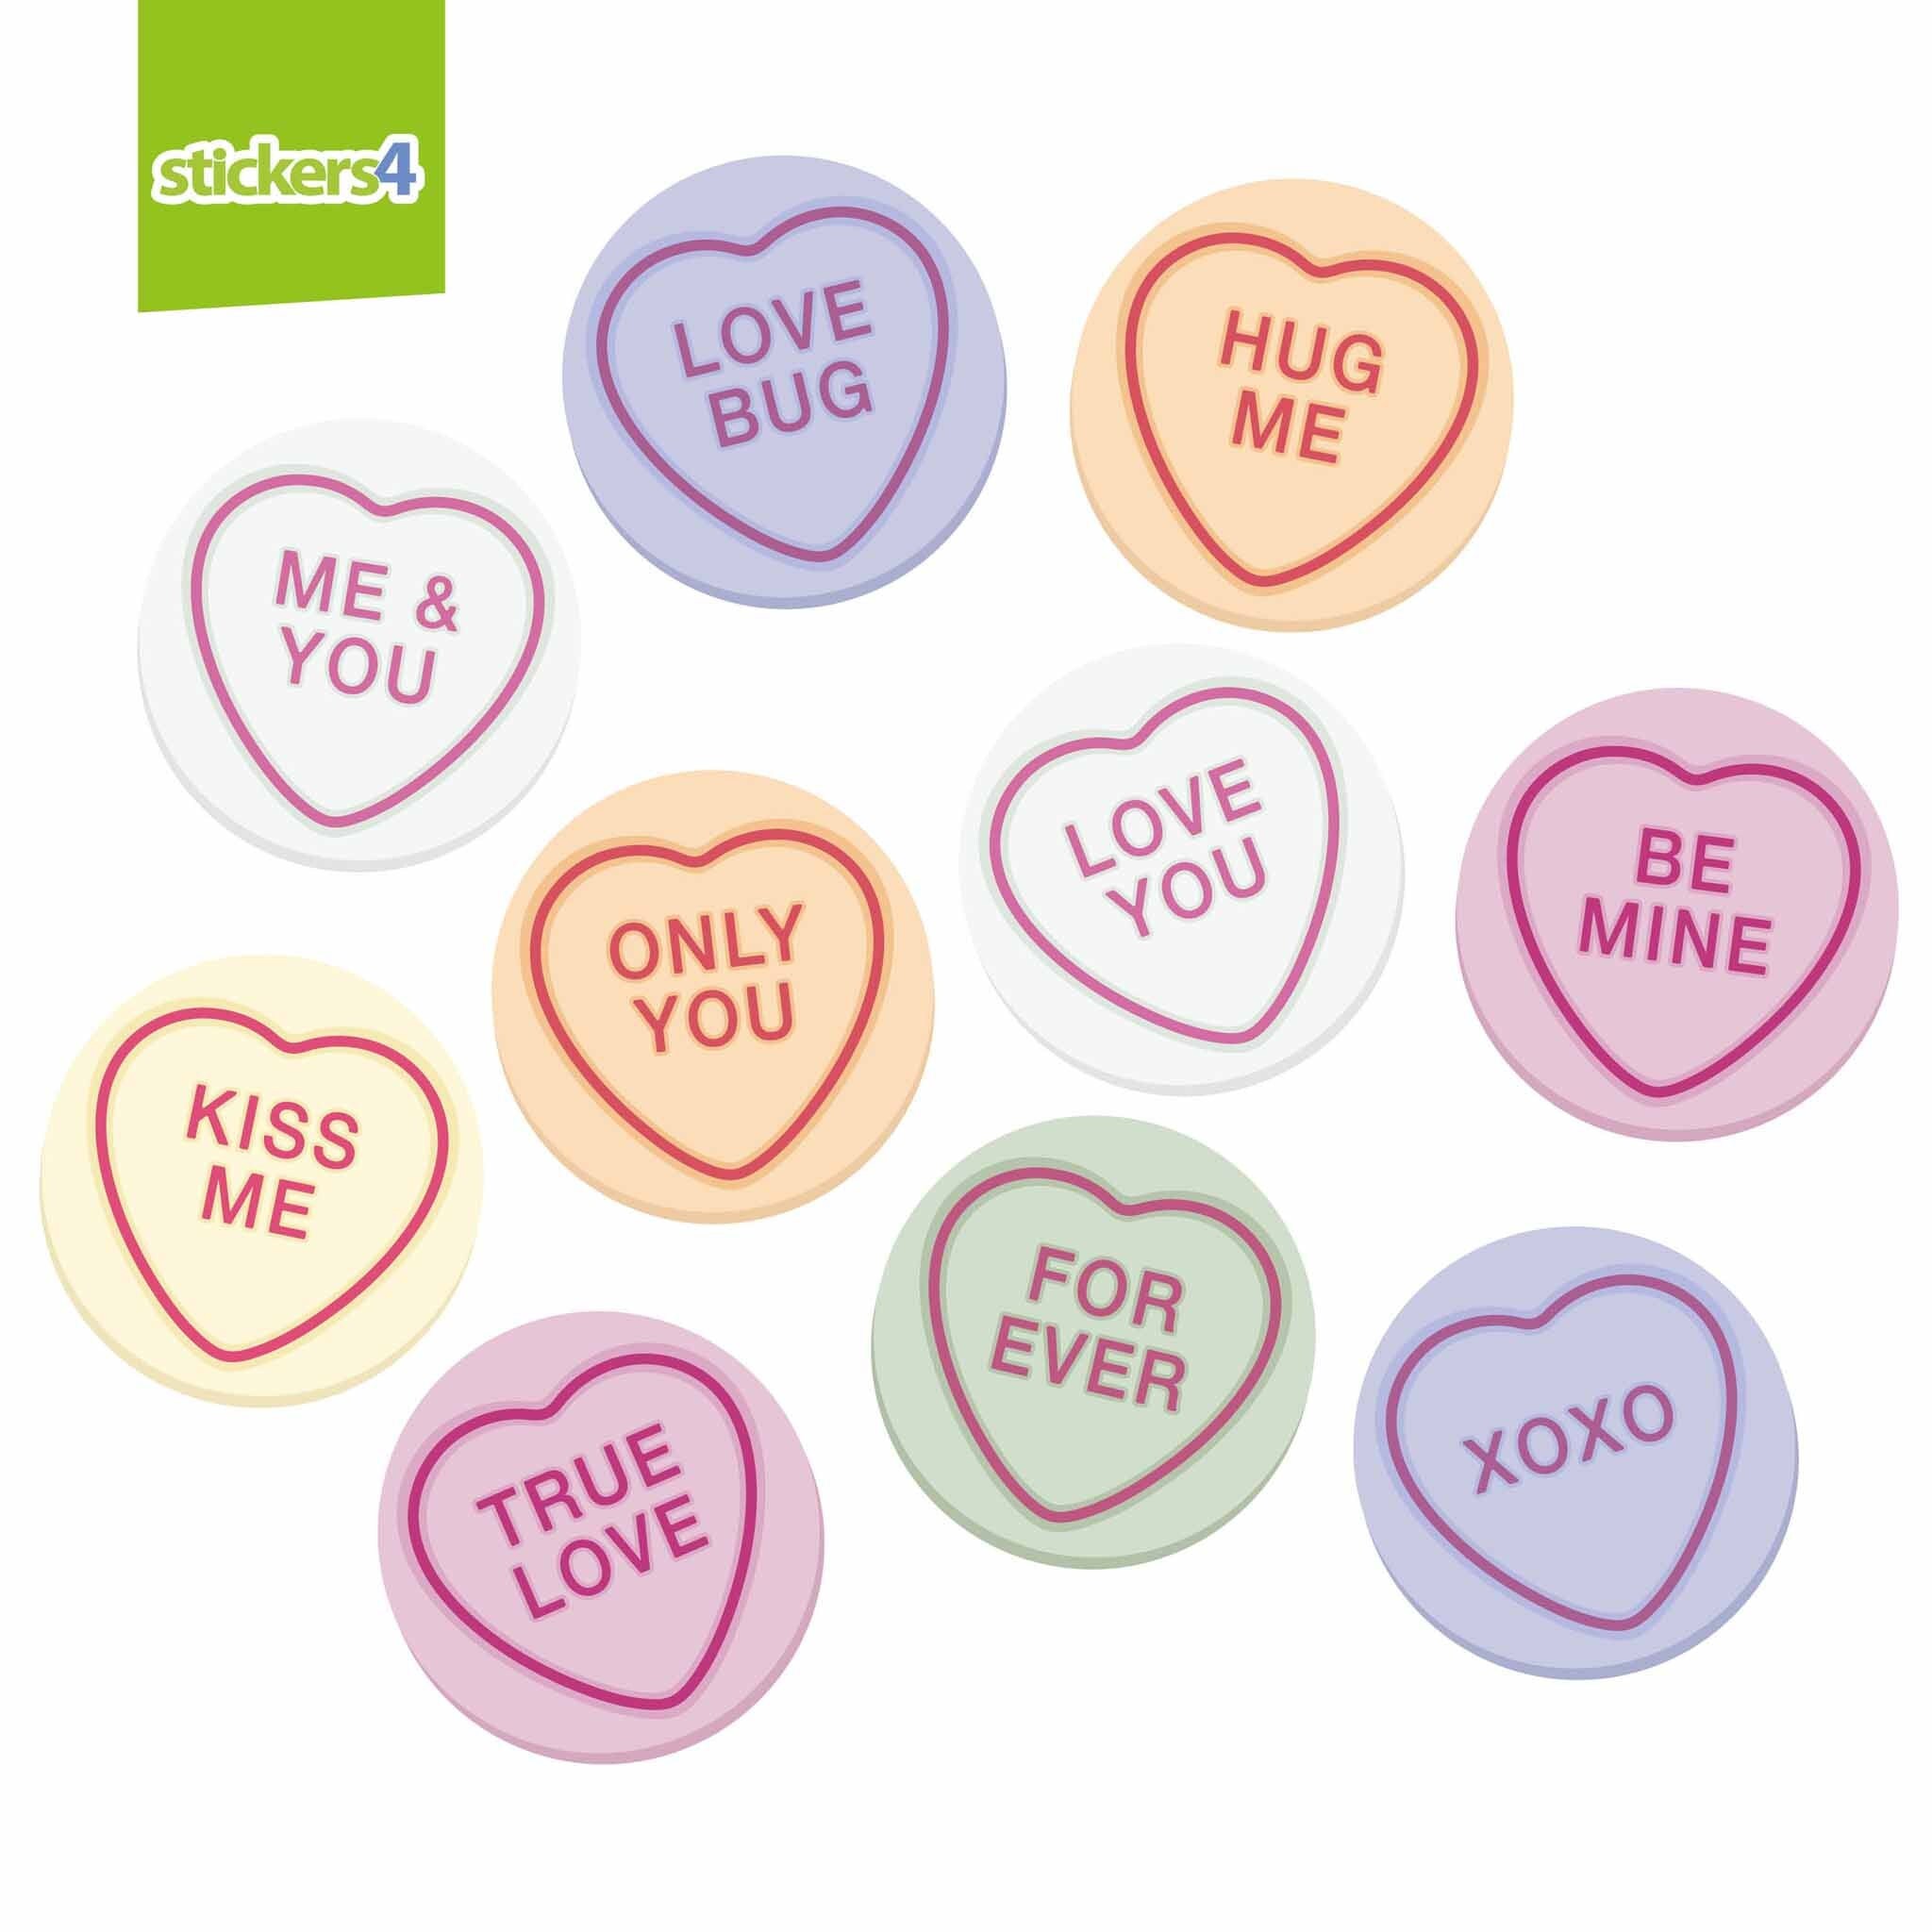 Comprar 9 Uds pegatinas adhesivas para ventana del Día de San Valentín  diseño de doble cara pegatinas electrostáticas de corazón de amor  extraíbles no adhesivas